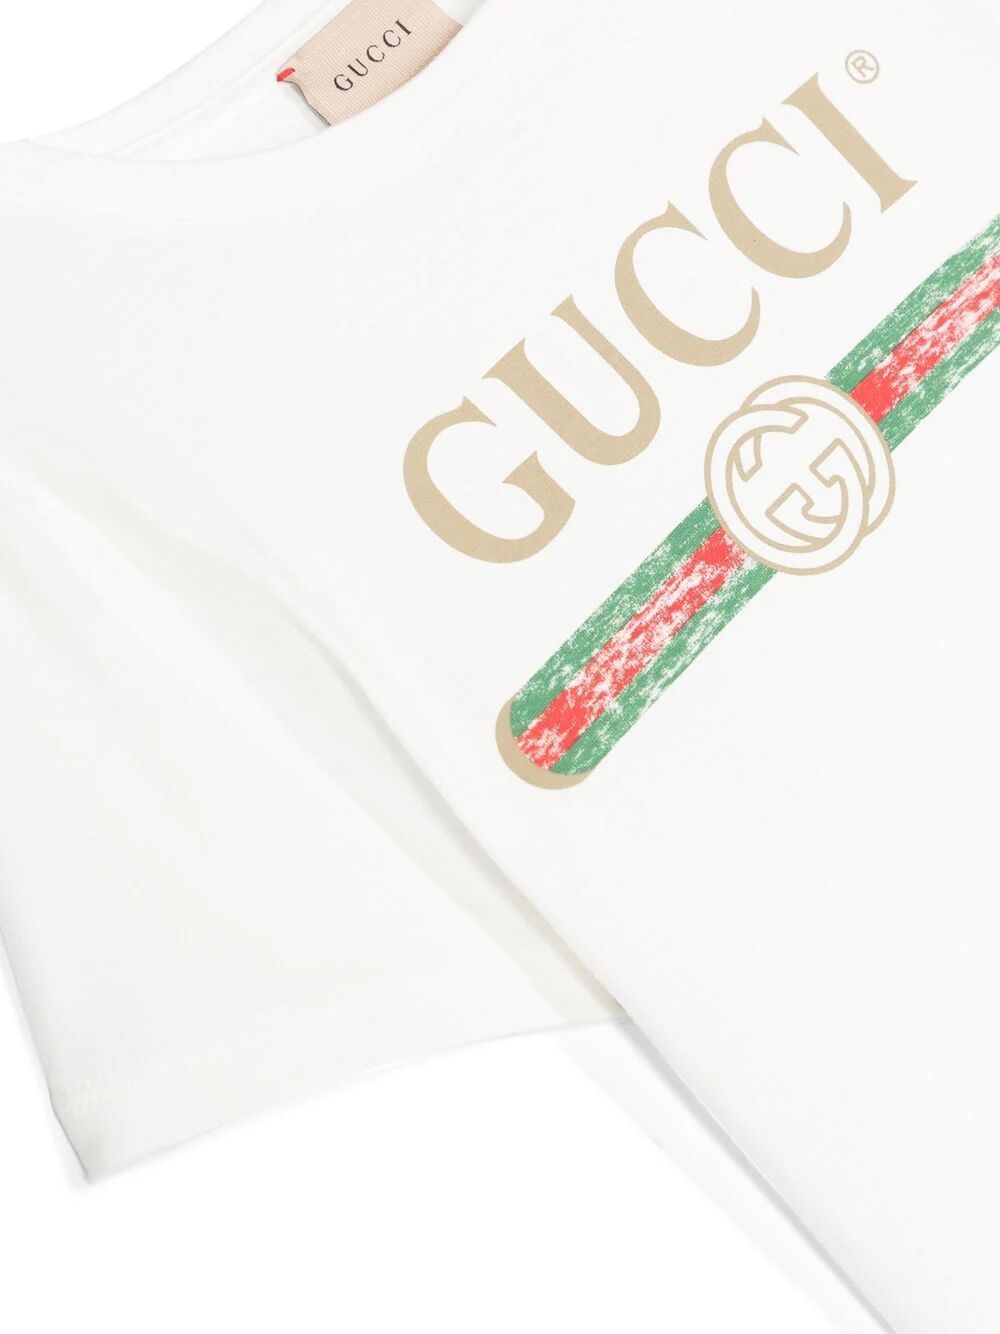 Shop Gucci T In White